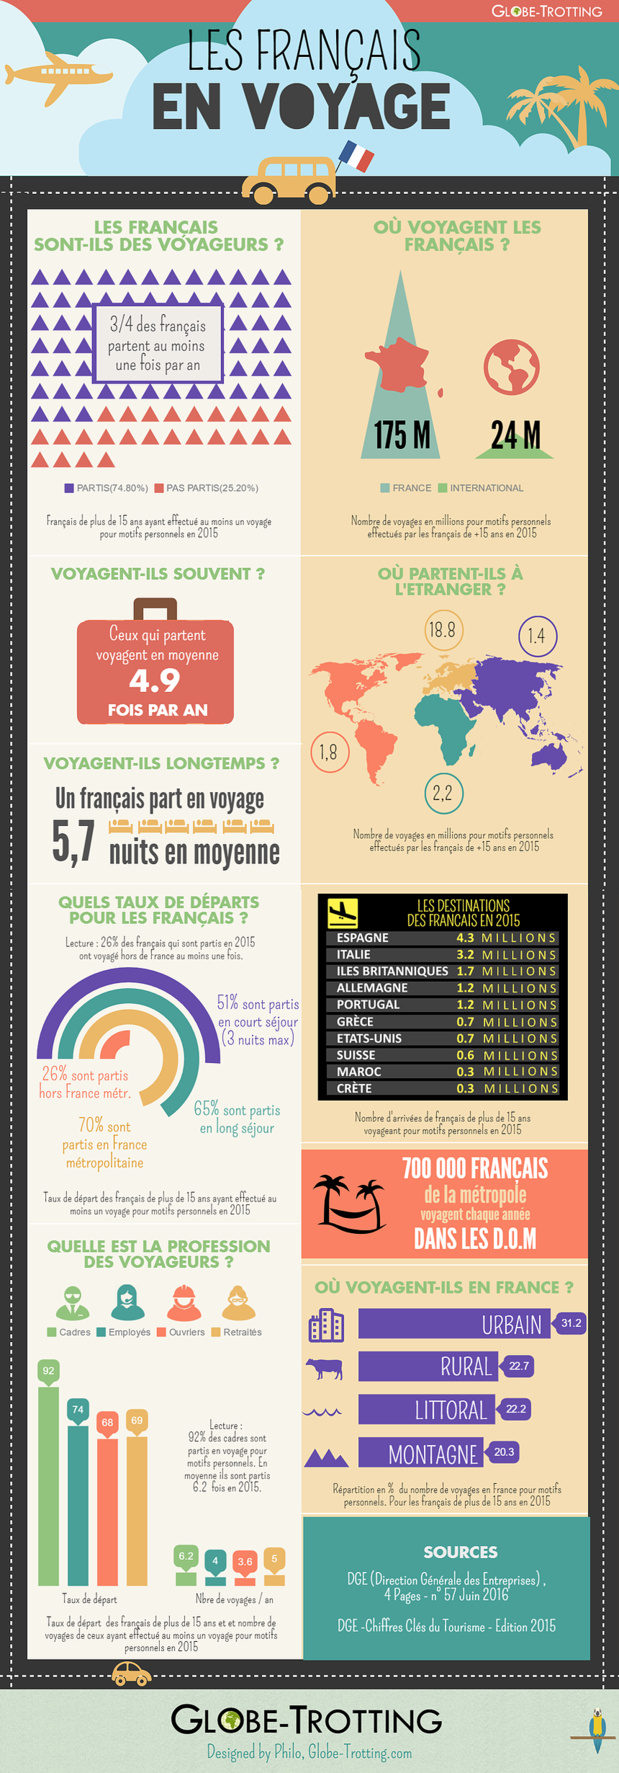 Infographie : les chiffres des voyages des Français en 2015